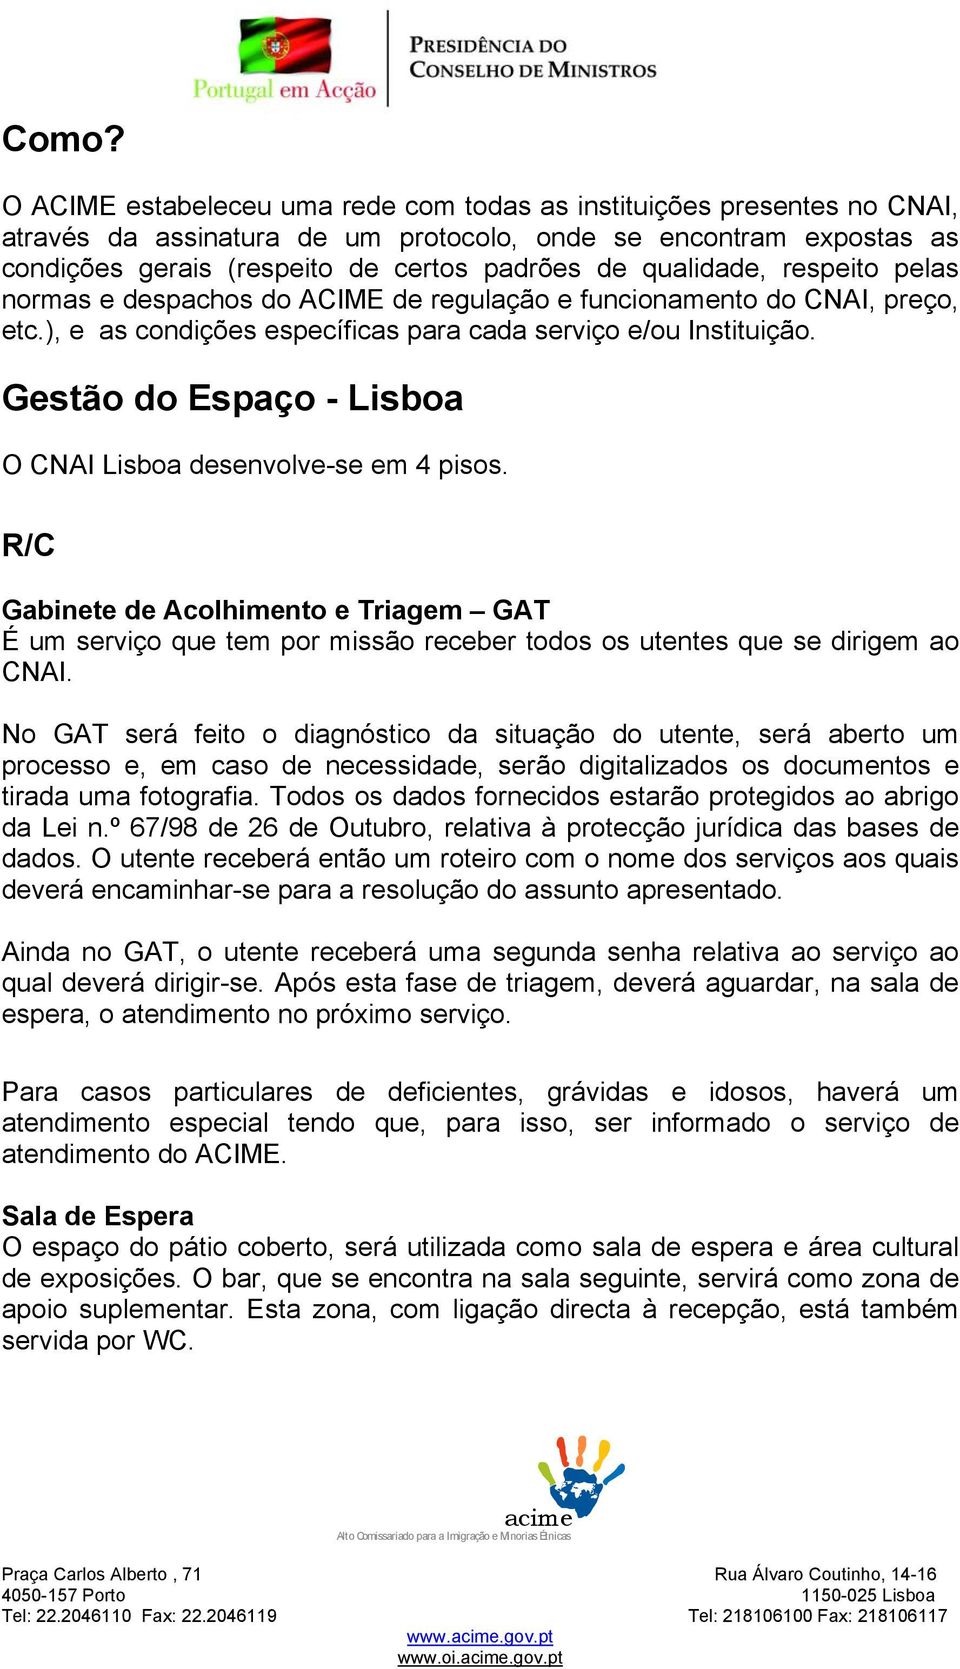 Gestão do Espaço - Lisboa O CNAI Lisboa desenvolve-se em 4 pisos. R/C Gabinete de Acolhimento e Triagem GAT É um serviço que tem por missão receber todos os utentes que se dirigem ao CNAI.